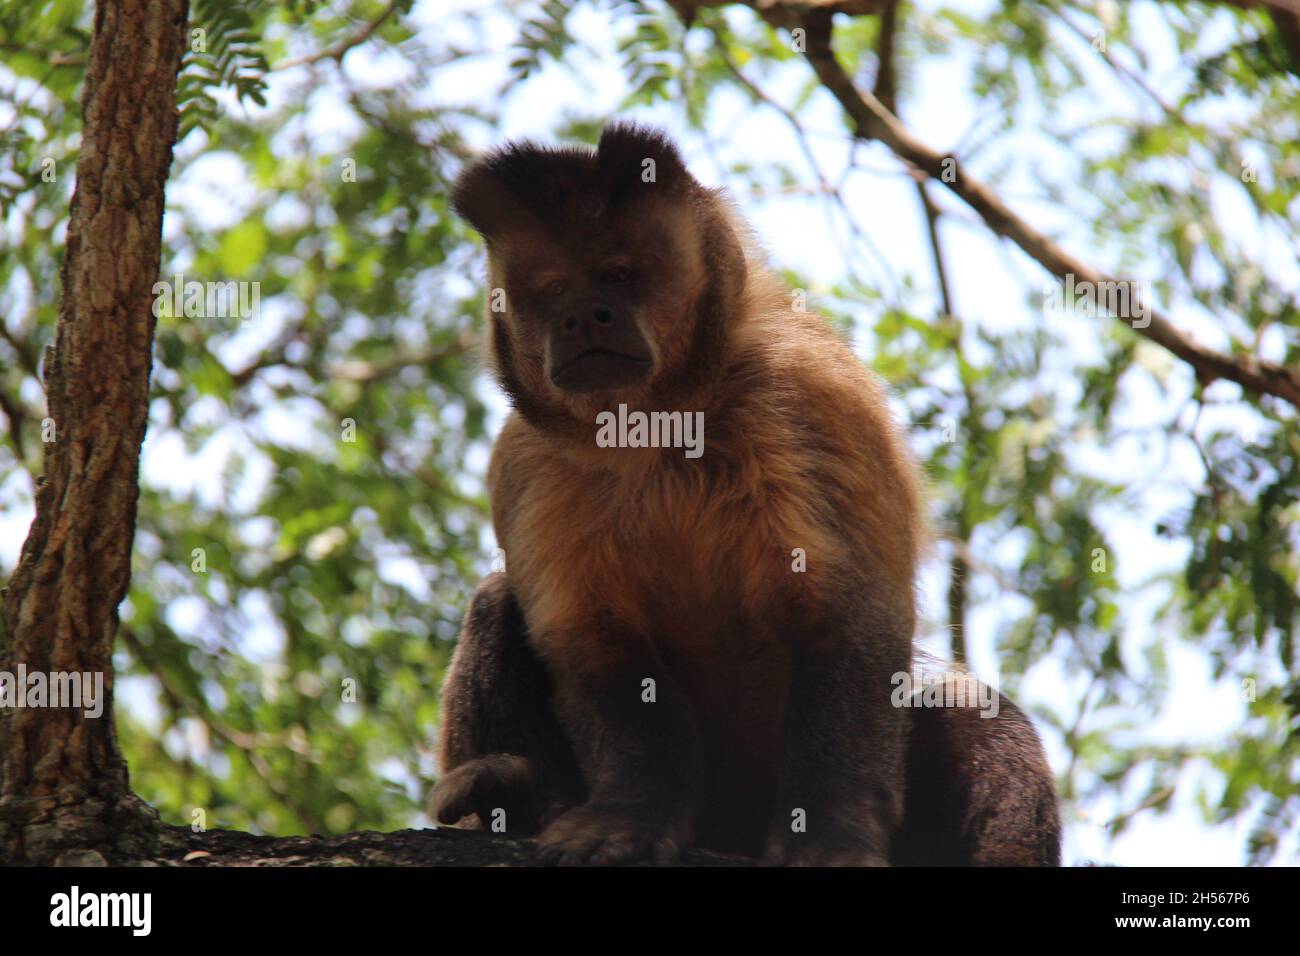 Ein Affe sitzt auf einem Baumstamm und schaut auf die Fotokamera mit unscharfem Hintergrund. Bonito - Mato Grosso do Sul - Brasilien. Stockfoto